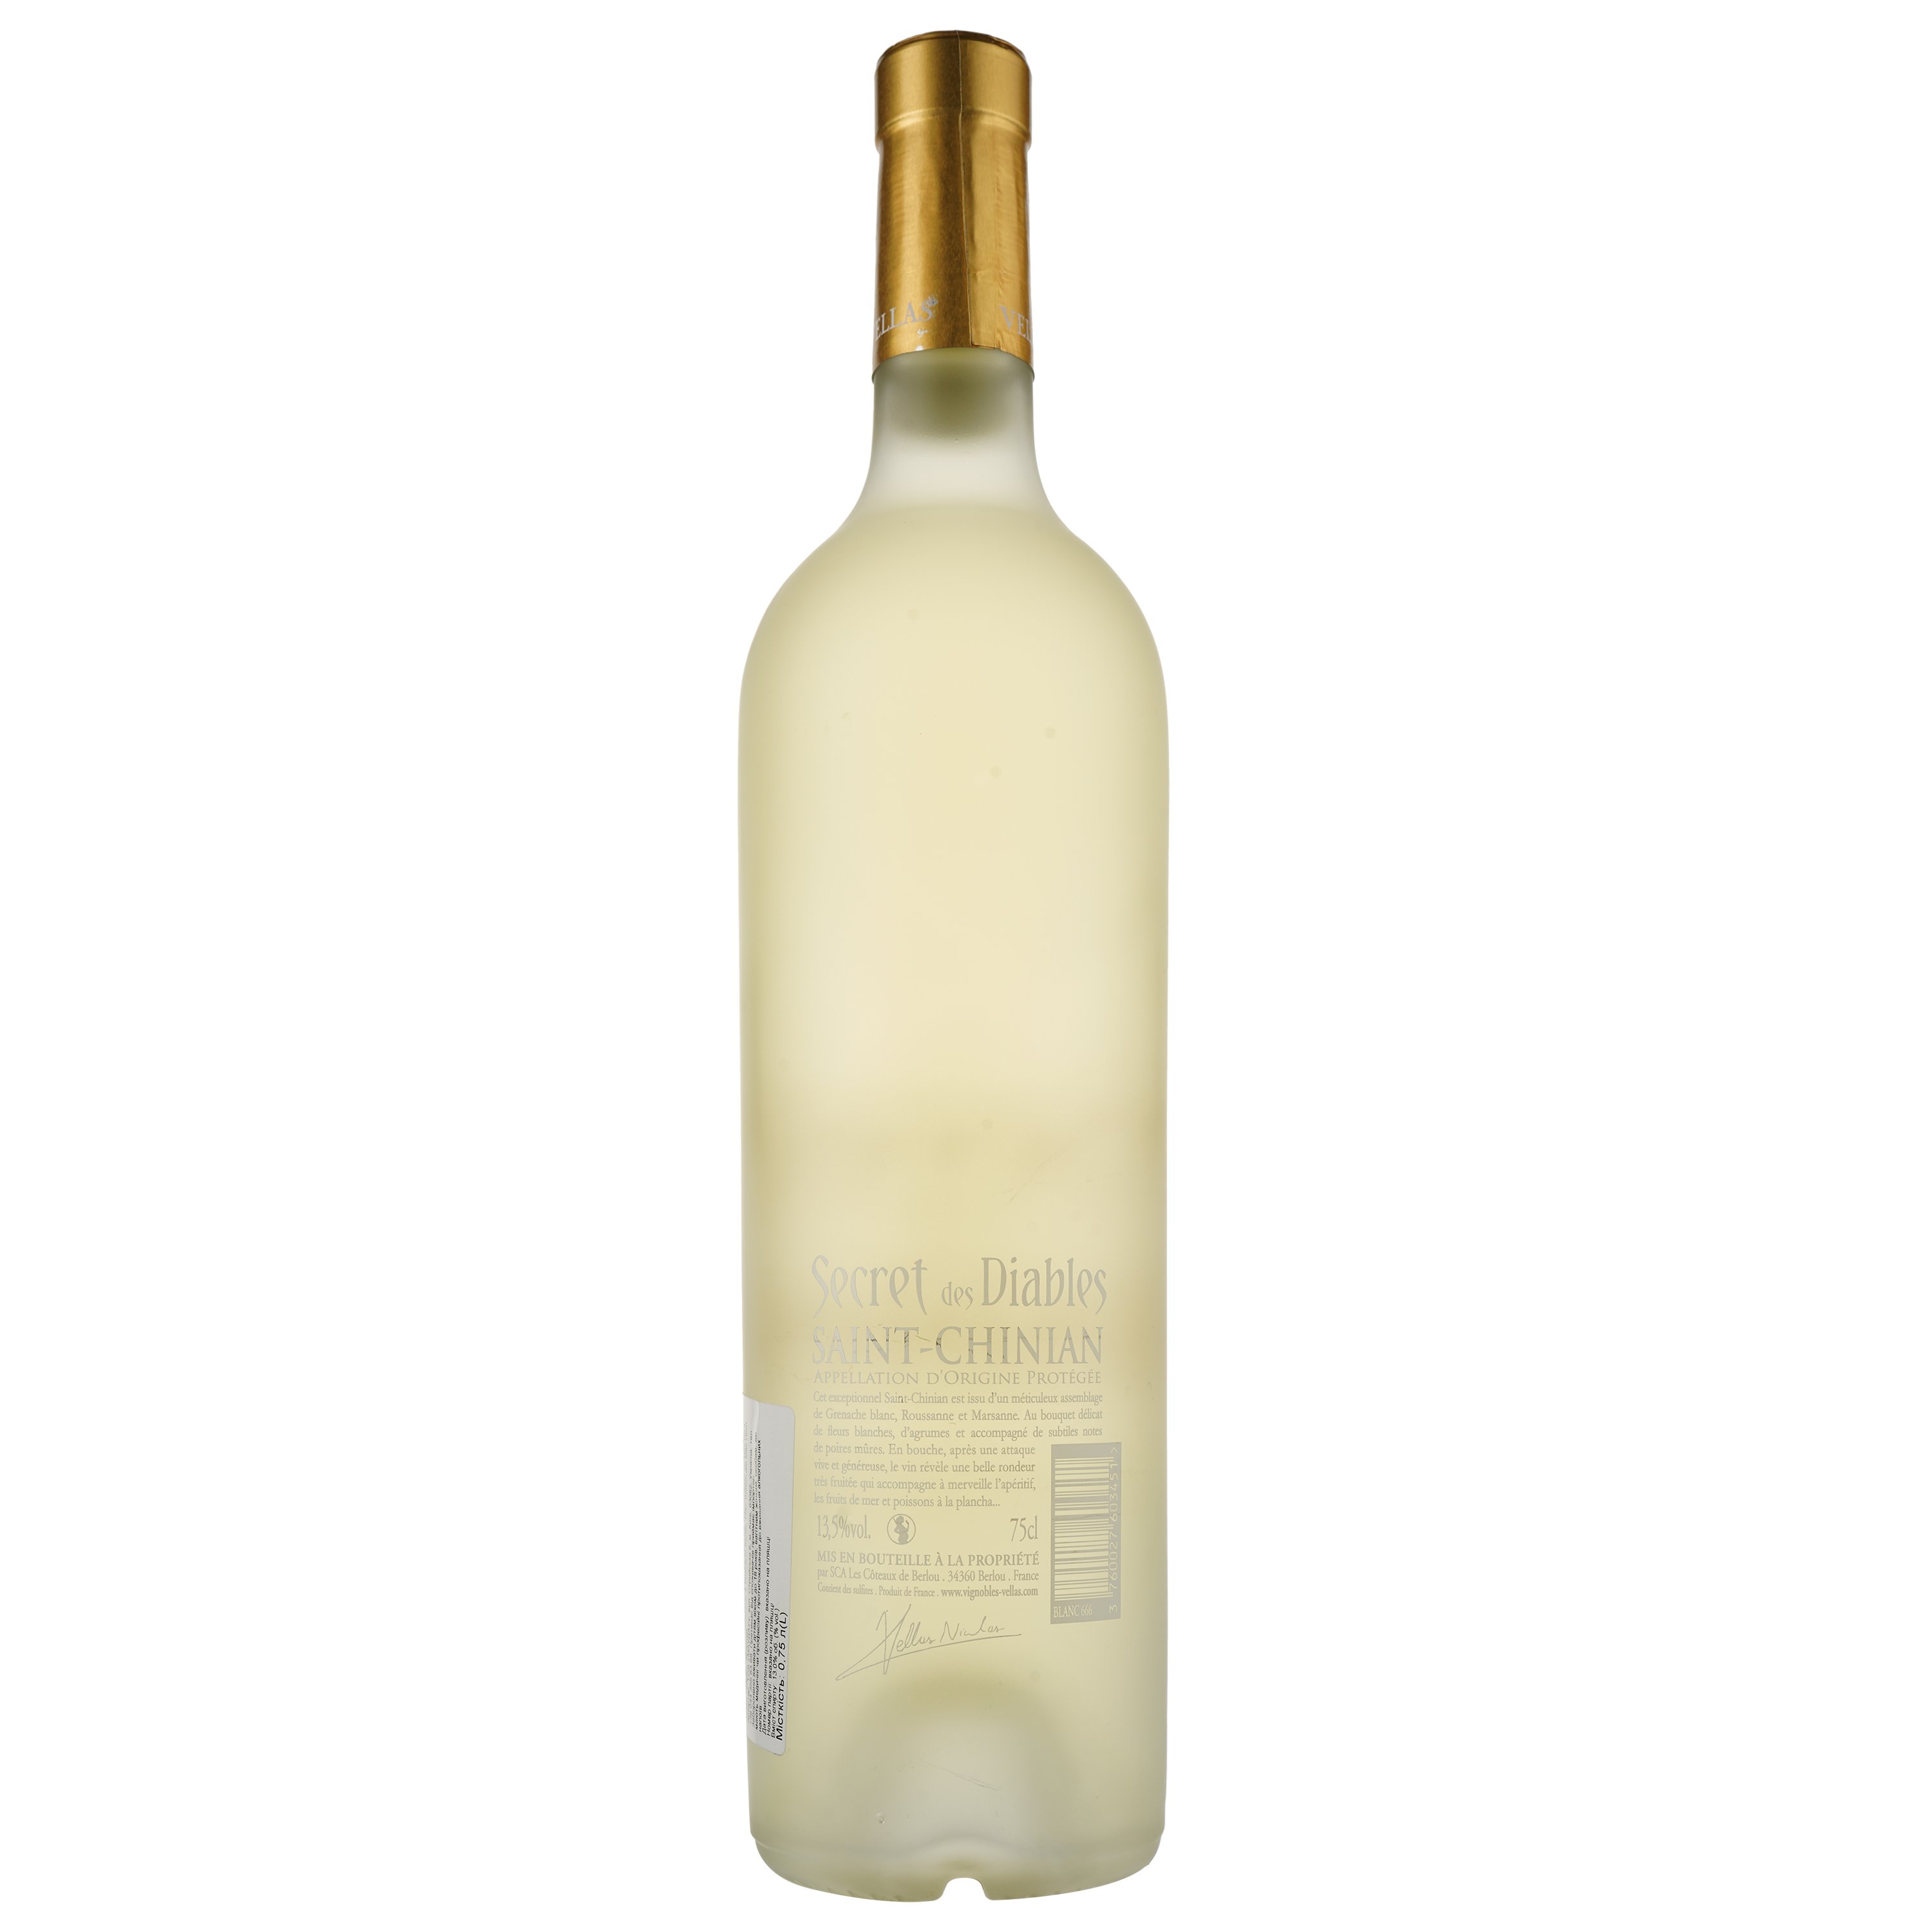 Вино Secret Des Diables Blanc AOP Saint Chinian, біле, сухе, 0.75 л - фото 2